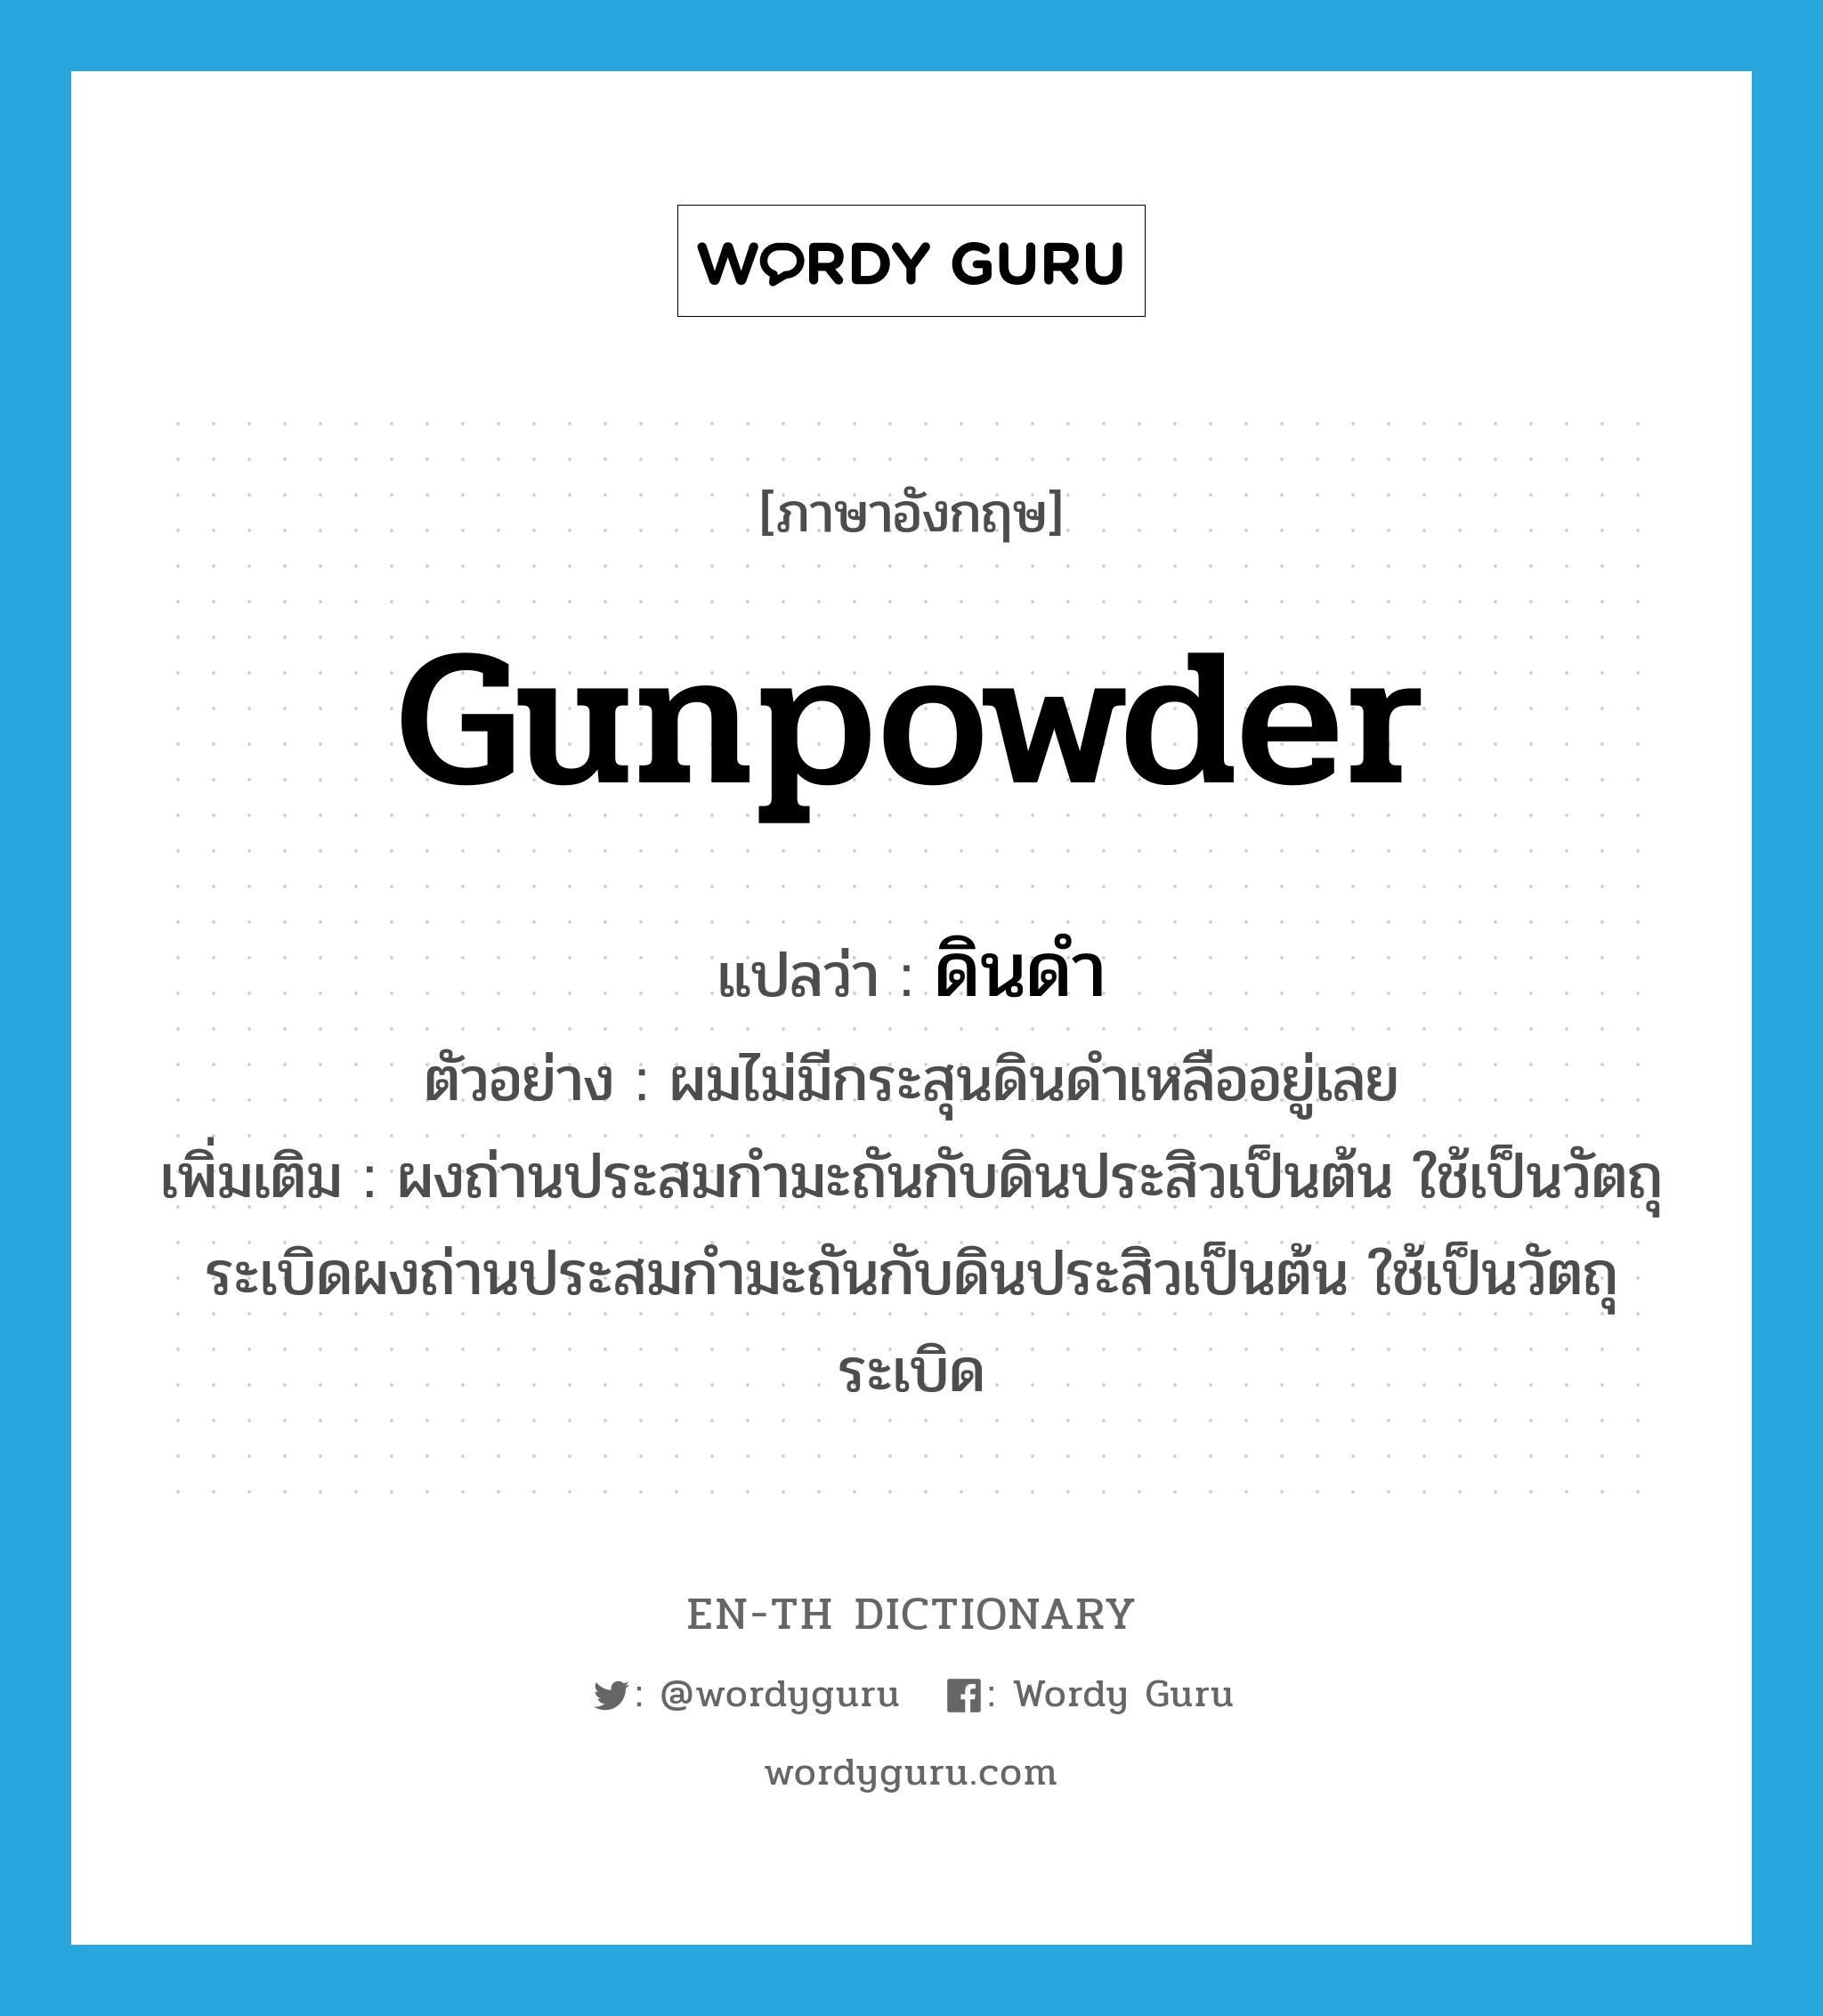 gunpowder แปลว่า?, คำศัพท์ภาษาอังกฤษ gunpowder แปลว่า ดินดำ ประเภท N ตัวอย่าง ผมไม่มีกระสุนดินดำเหลืออยู่เลย เพิ่มเติม ผงถ่านประสมกำมะถันกับดินประสิวเป็นต้น ใช้เป็นวัตถุระเบิดผงถ่านประสมกำมะถันกับดินประสิวเป็นต้น ใช้เป็นวัตถุระเบิด หมวด N